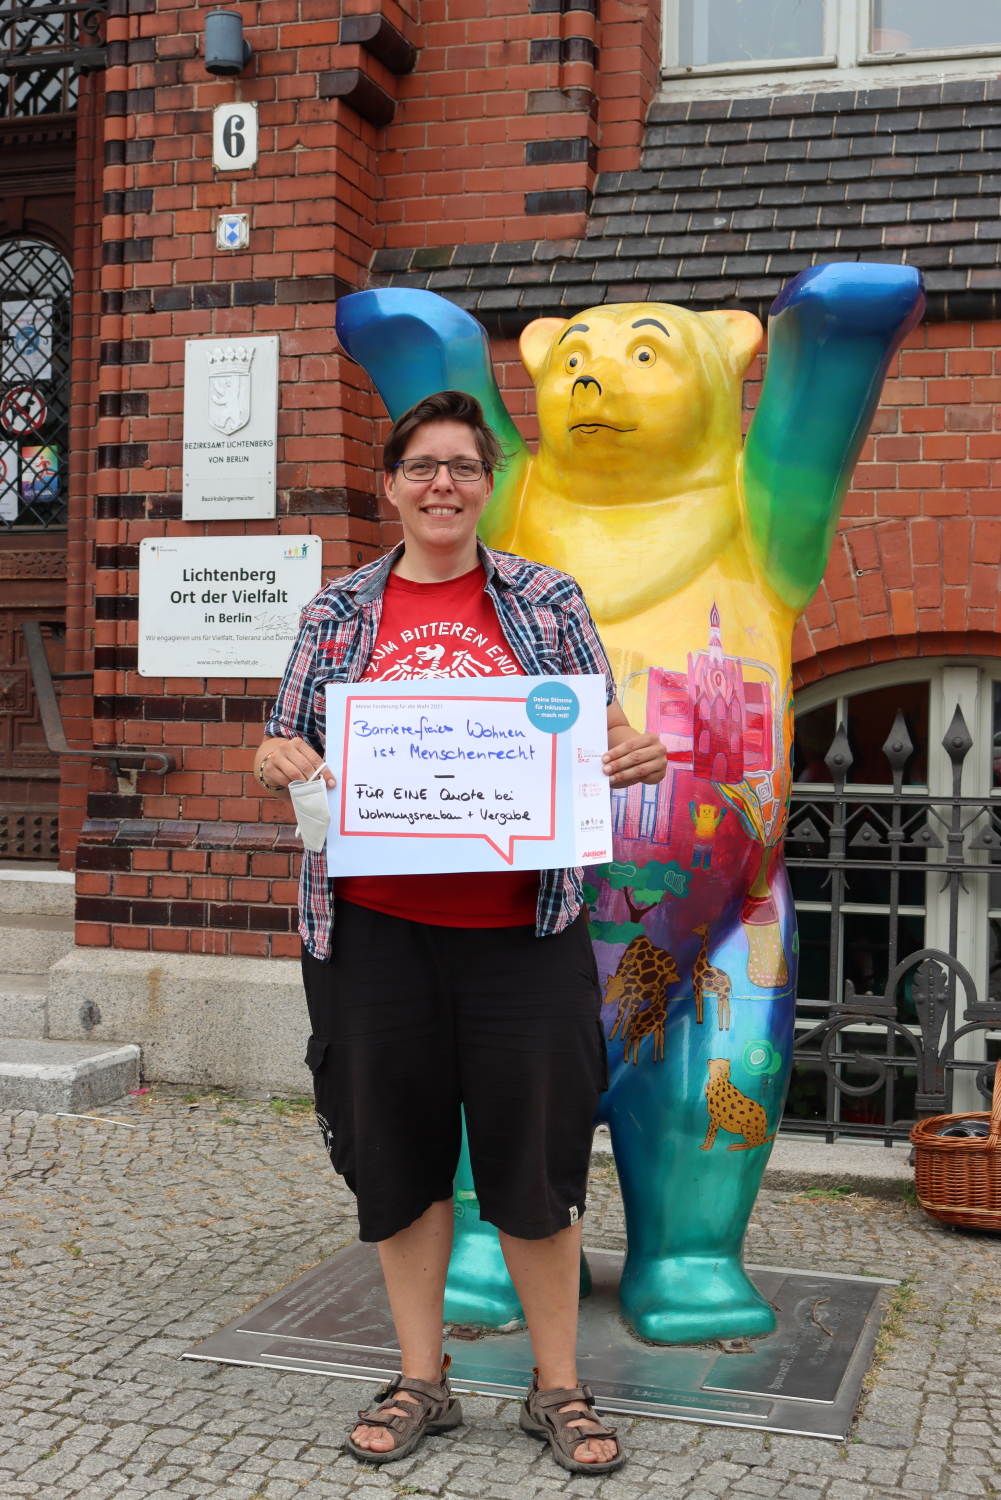 Die BVV-Verordnete der Partei DIE LINKE, Claudia Engelmann, fordert: "Barrierefreies Wohnen ist Menschenrecht - FÜR EINE Quote bei Wohnungsneubau + Vergabe". Hinter ihr steht ein Buddy-Bär.